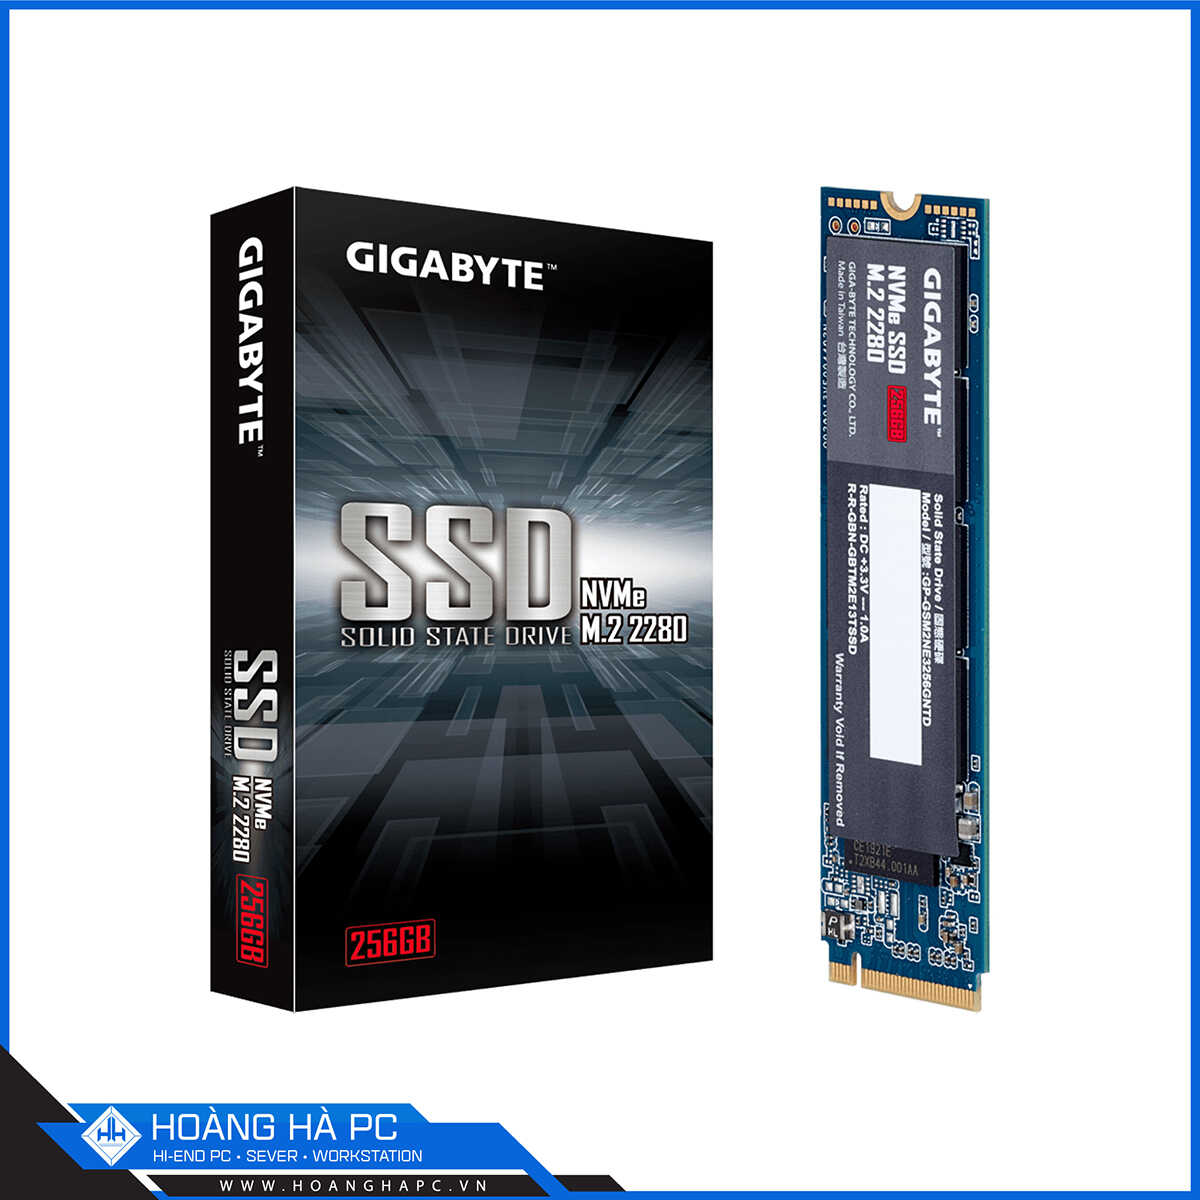 GIGABYTE NVMe SSD 256GB M.2 2280 NVMe Gen3 x4